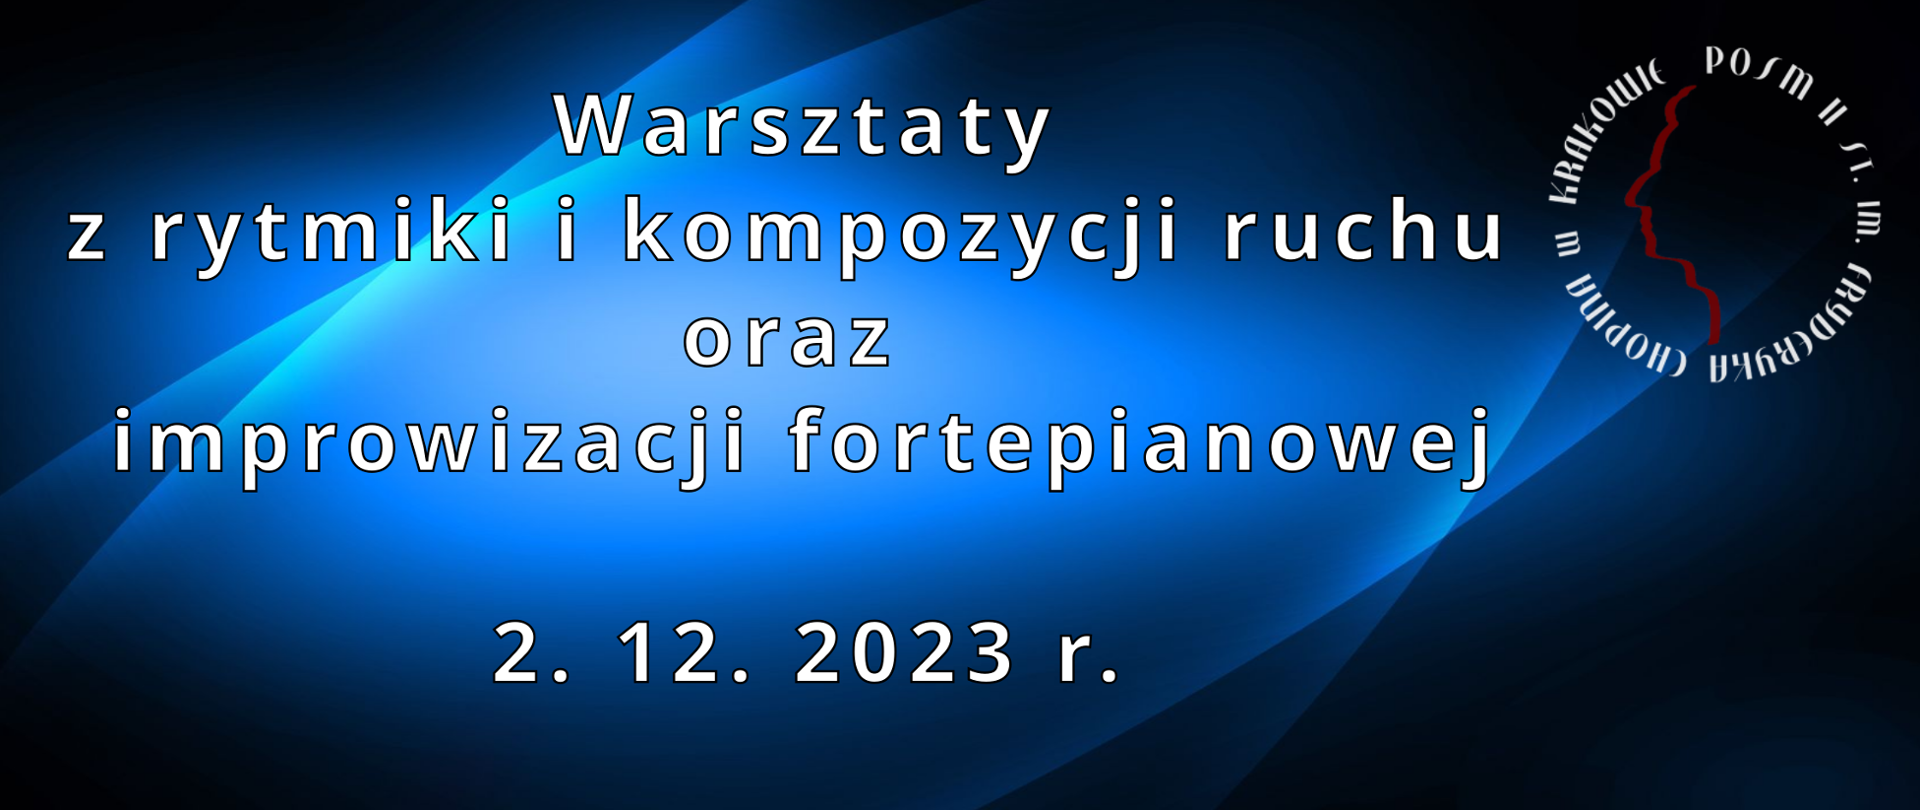 Banner, niebieskie tło, po prawej stronie logo szkoły, na środku tekst: Warsztaty z rytmiki i kompozycji ruchu oraz improwizacji fortepianowej 2.12.2023 r